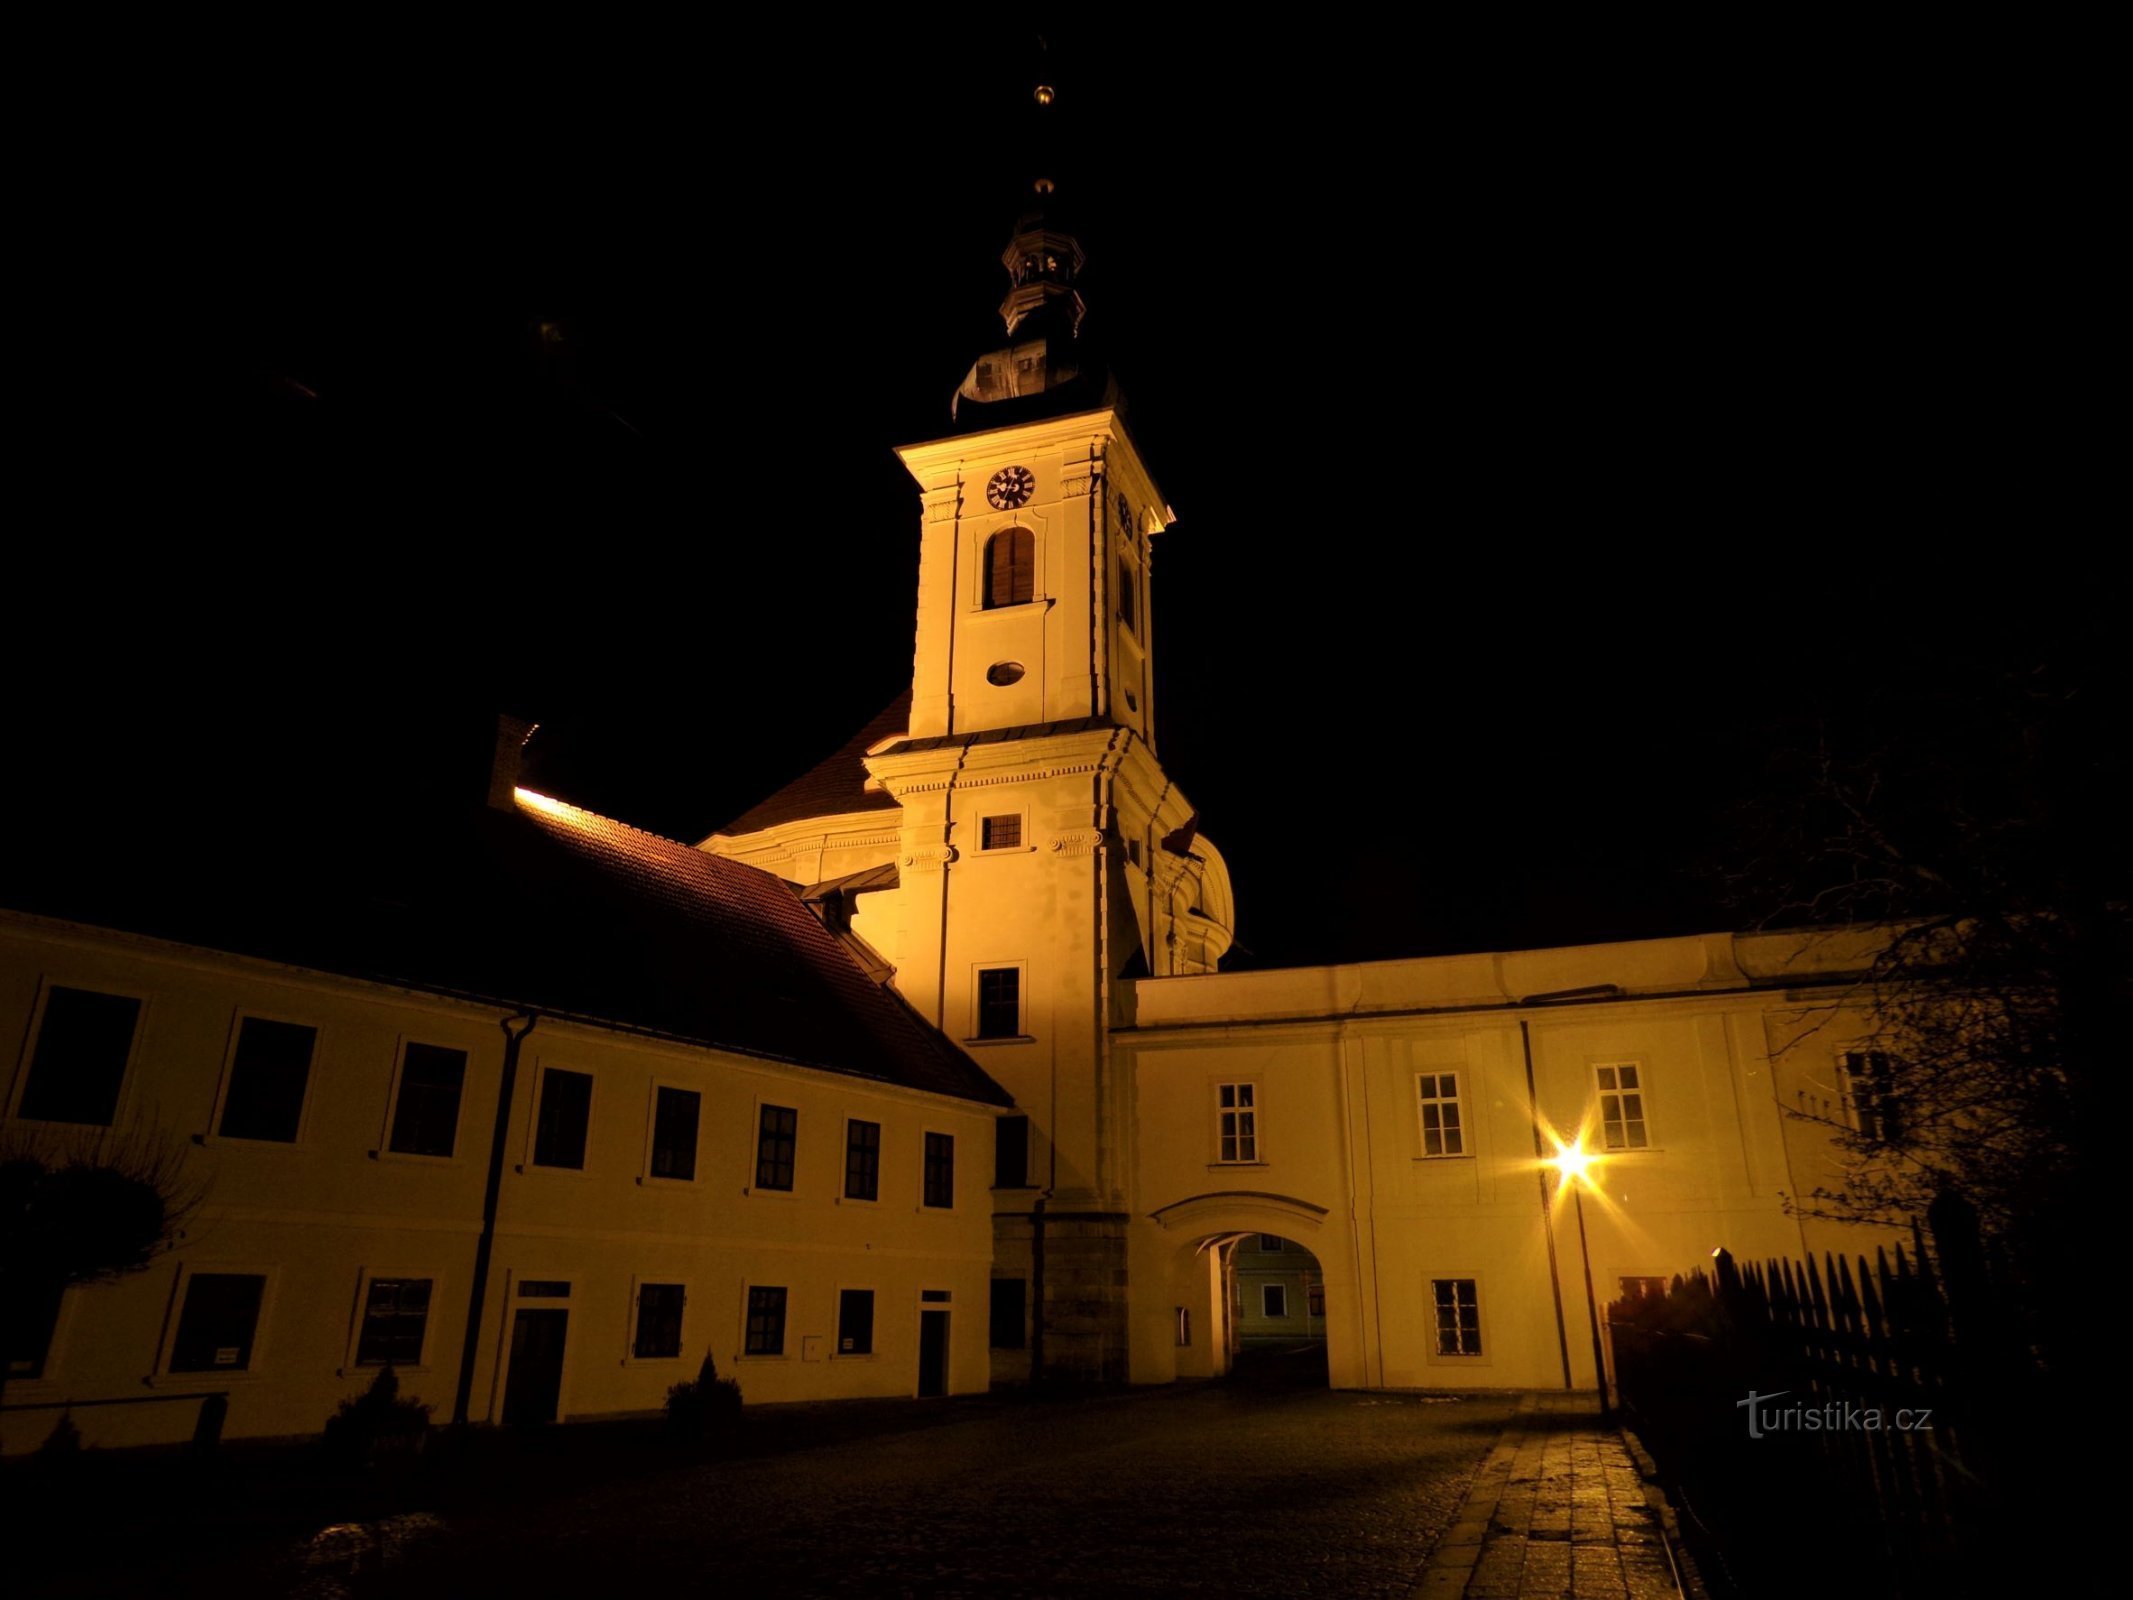 Nhà nguyện lâu đài ở Smiřice (ngày 1.1.2022 tháng XNUMX năm XNUMX)